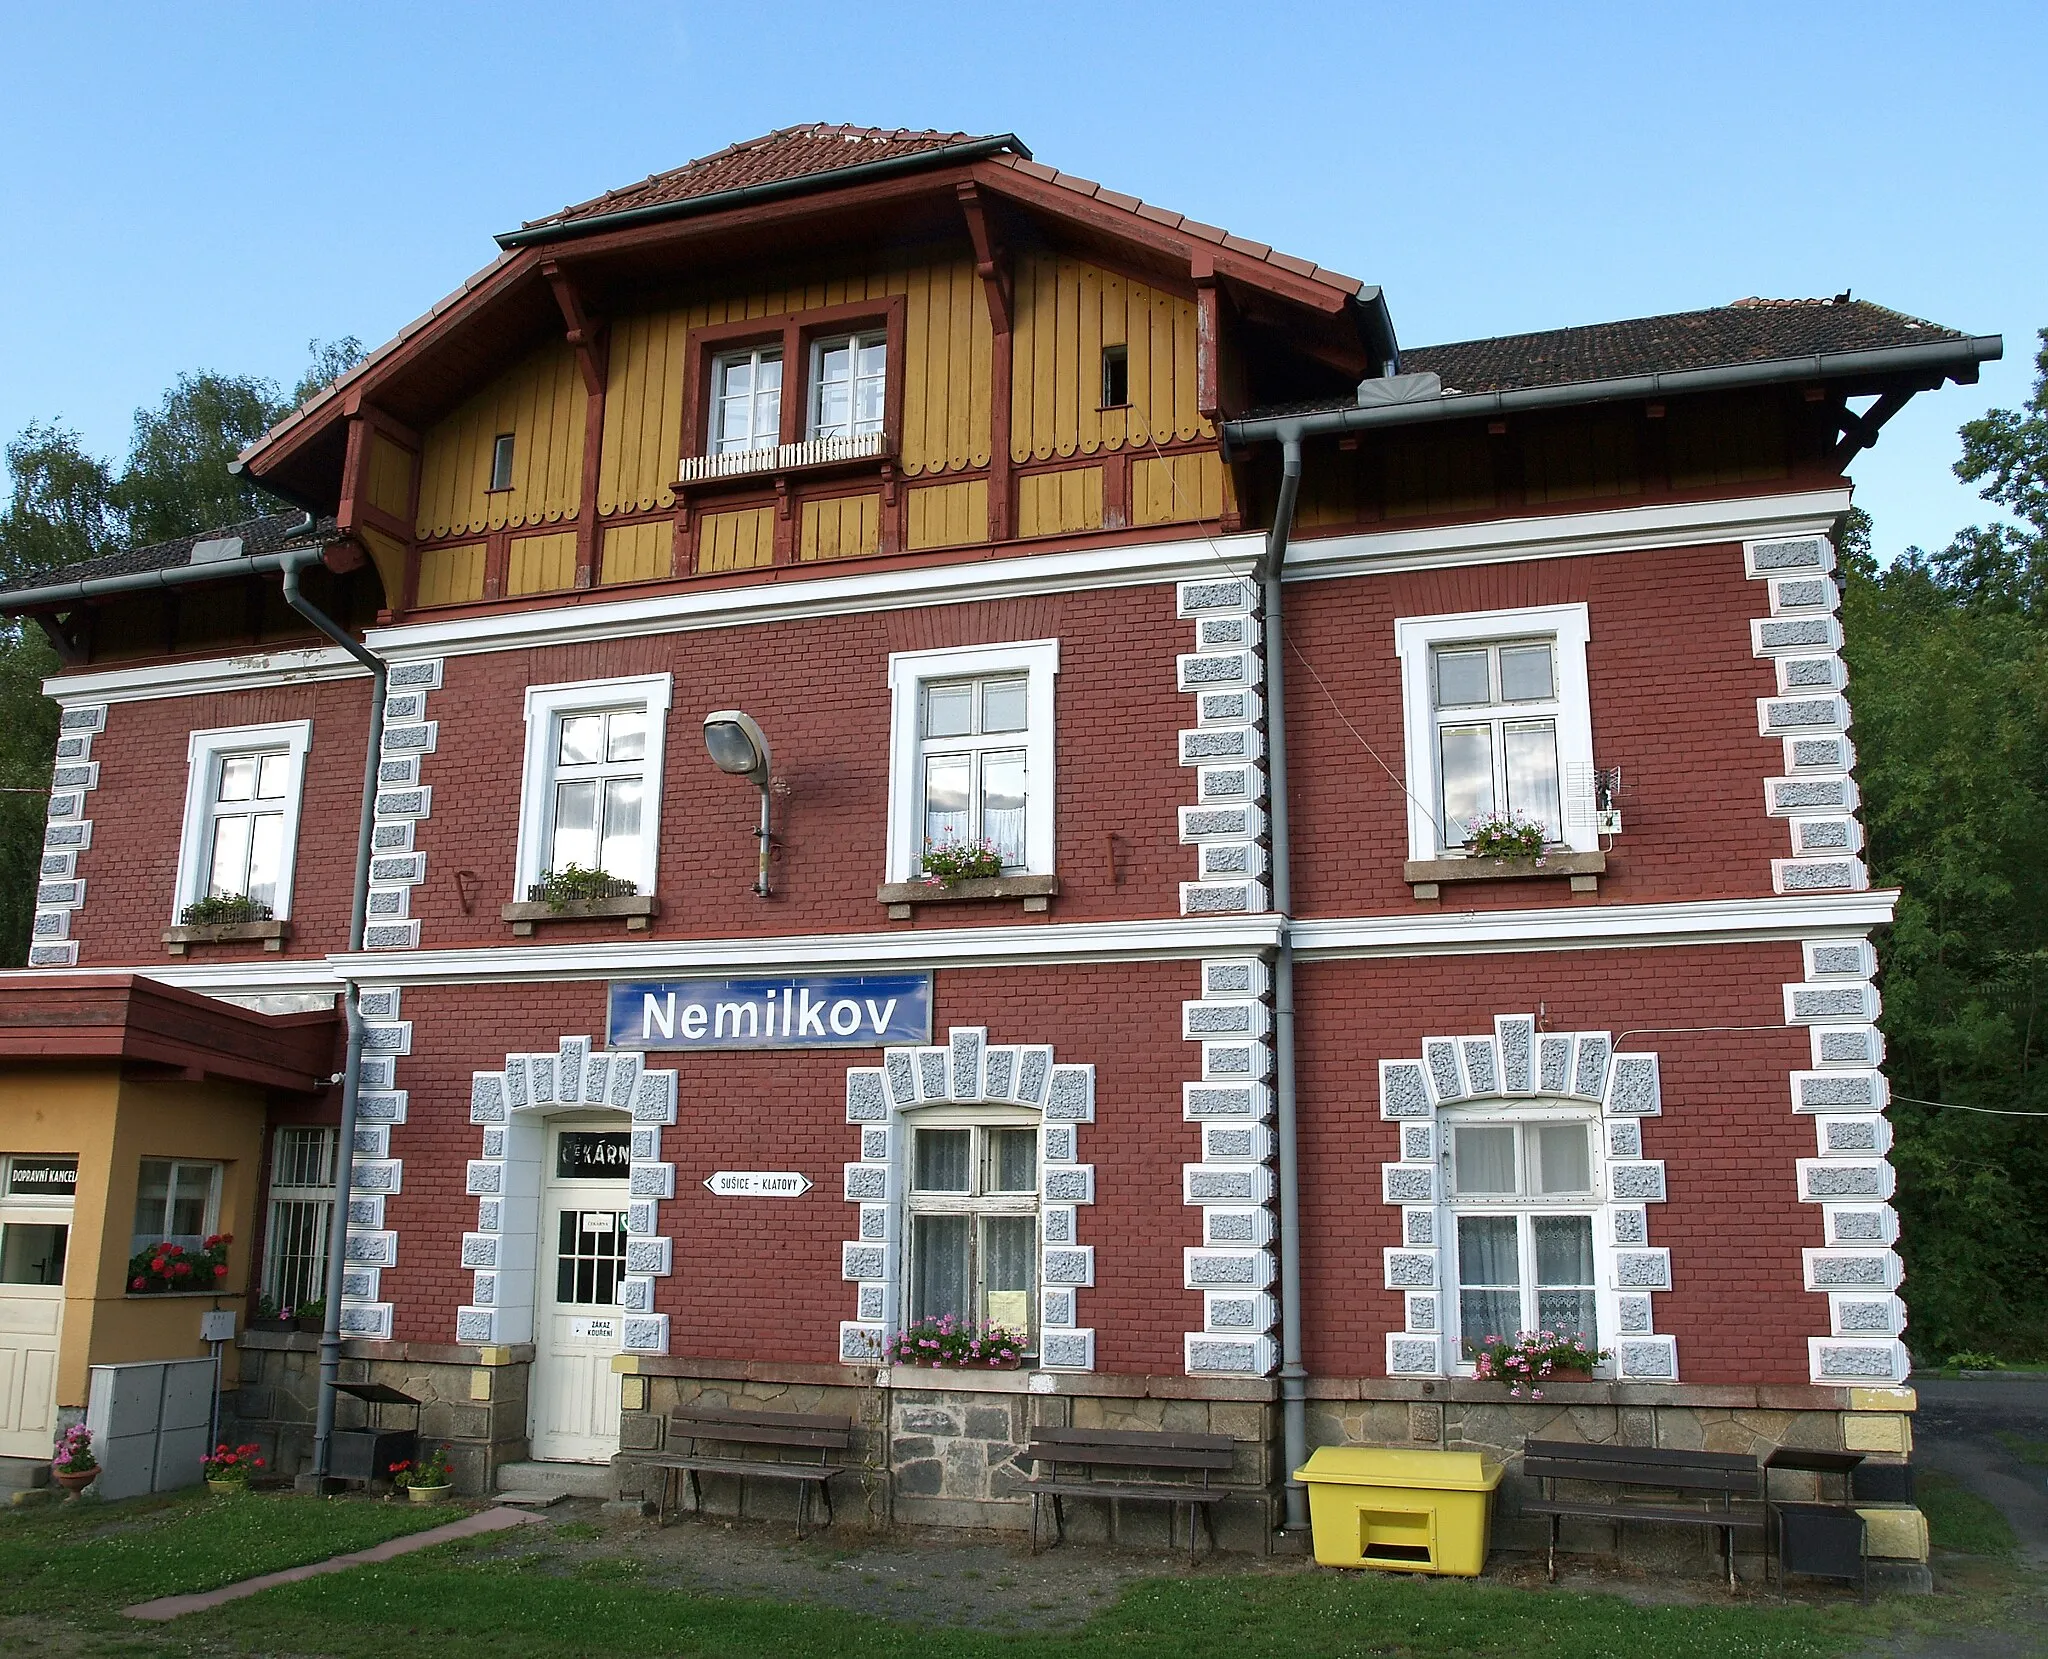 Photo showing: Czech village Nemilkov (part of Velhartice) – train station